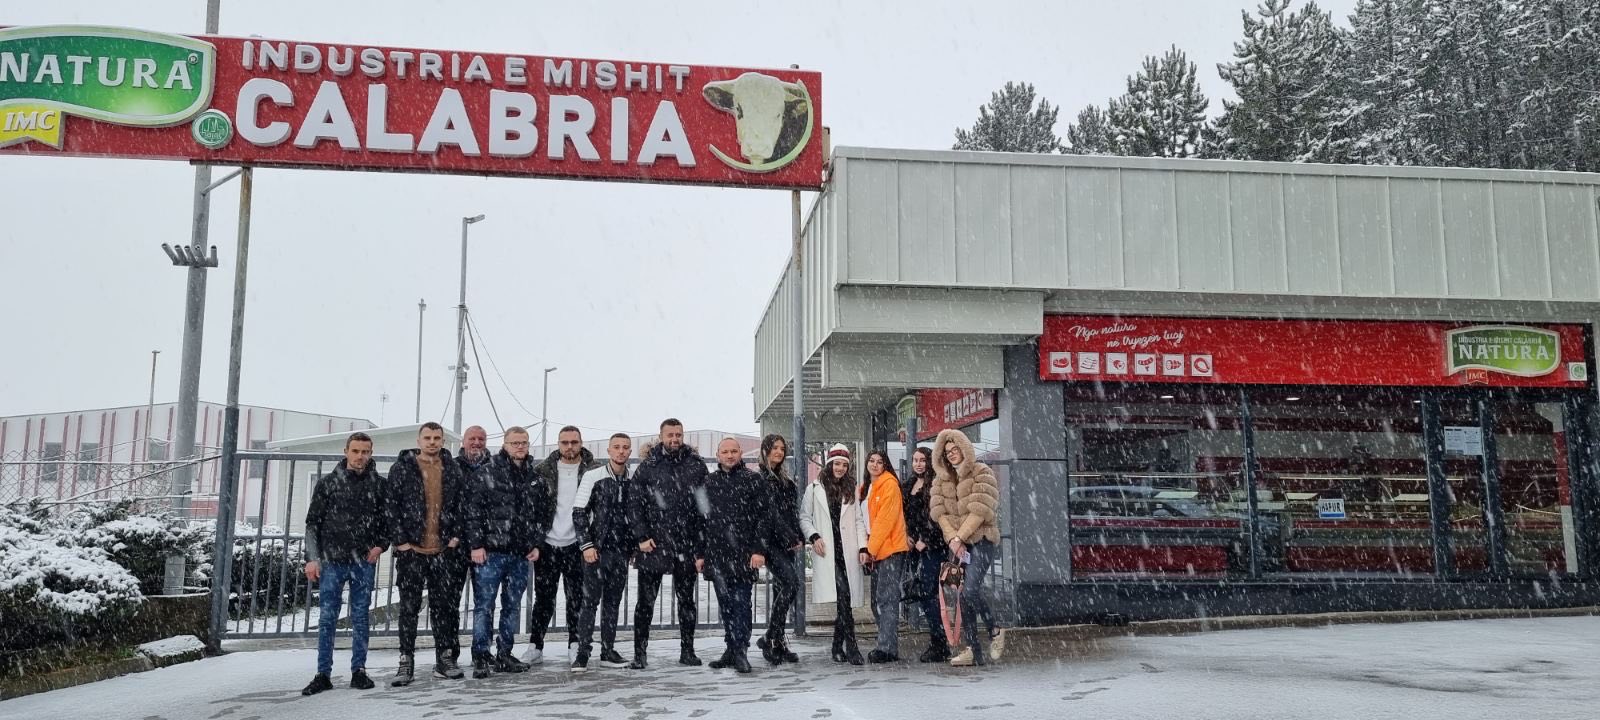 Studentët e Fakultetit Menaxhment, Biznes dhe Ekonomi në UBT vizituan Industrinë e Mishit Calabria “Natura” në Gjilan